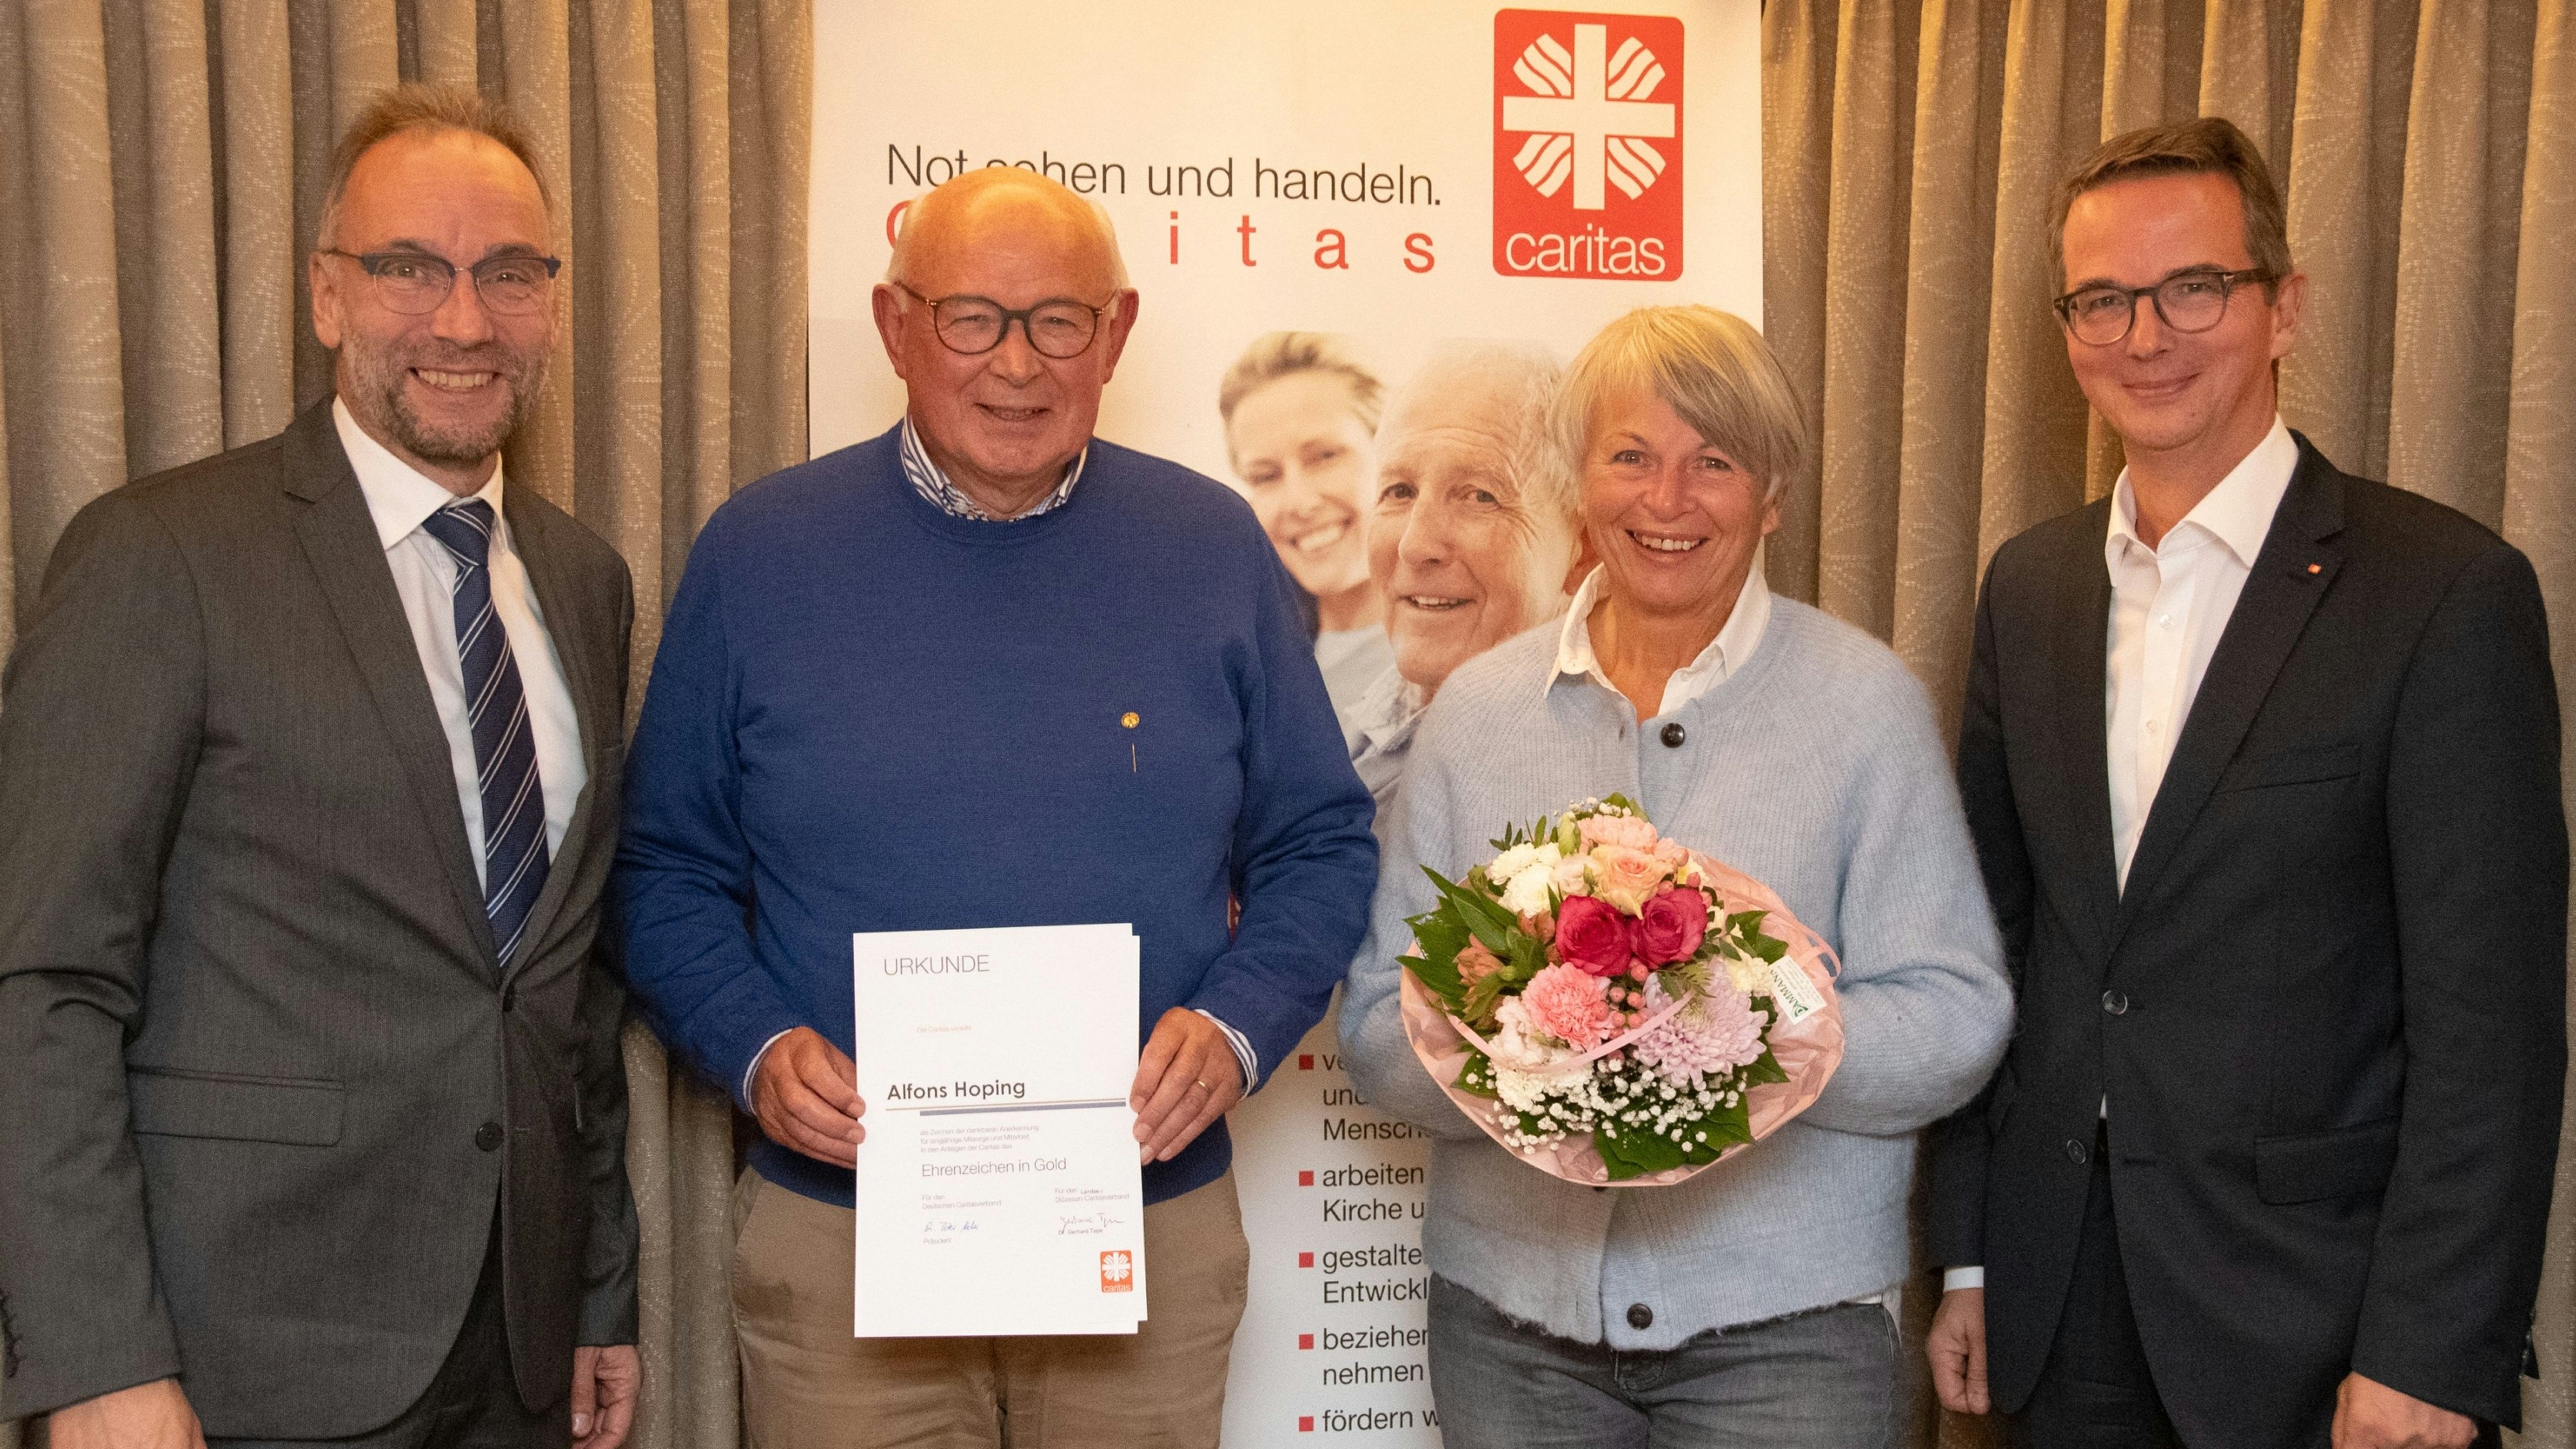 Überreichten das Ehrenzeichen: Honorarprofessor Dr. Martin Pohlmann (links) und Dr. Gerhard Tepe (rechts) mit Alfons Hoping und seiner Frau Margret. Foto: Kattinger